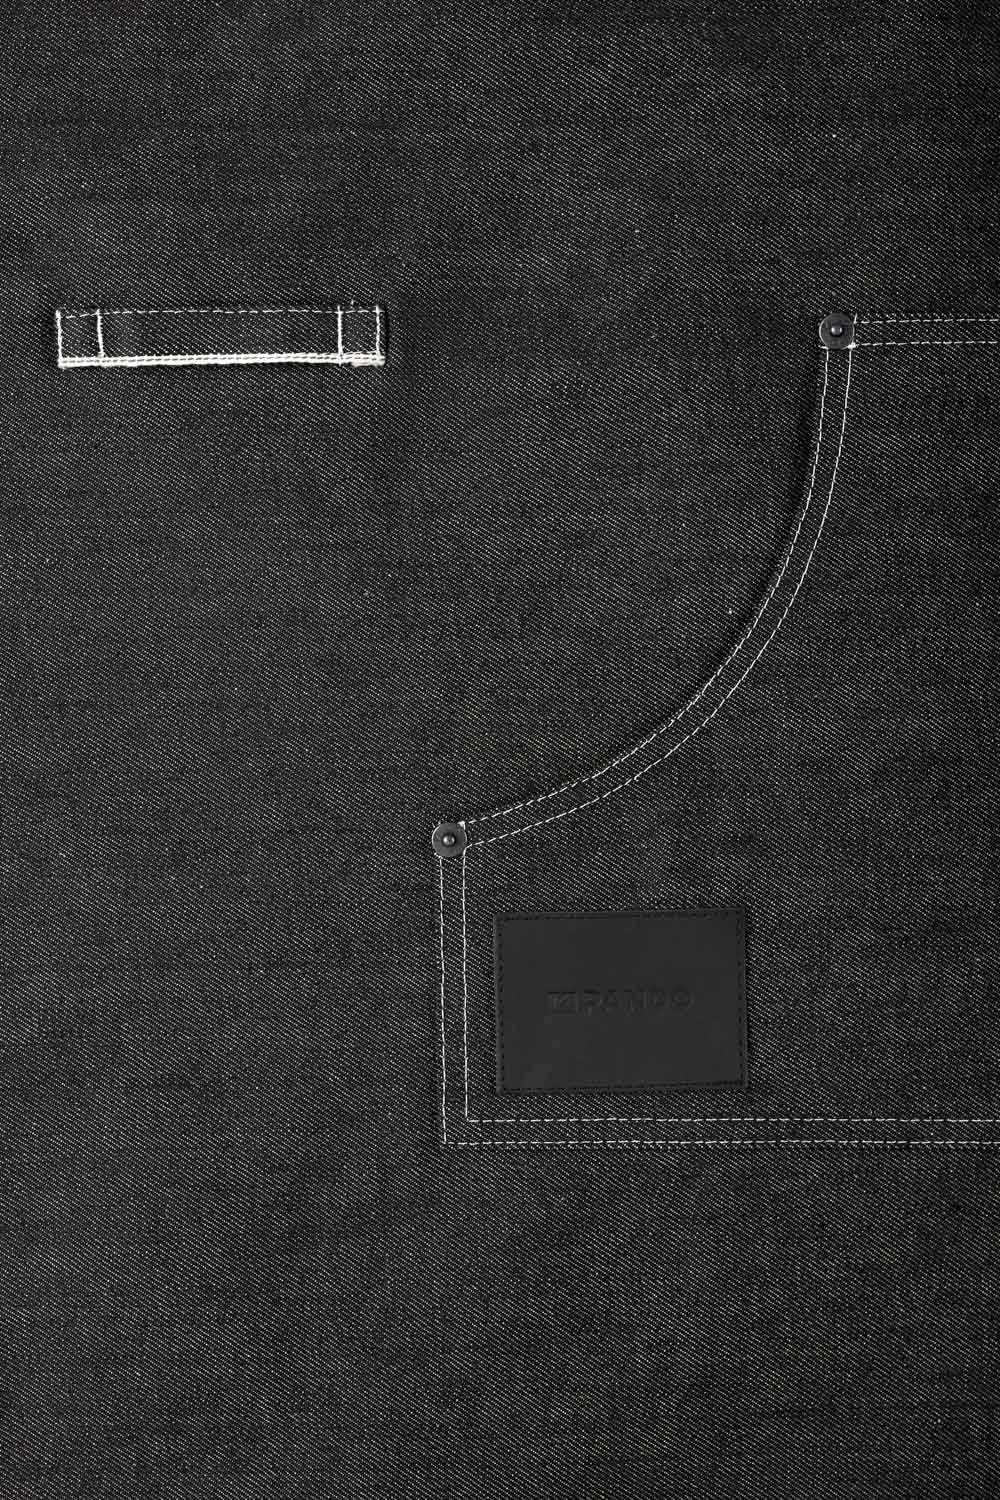 A close up of a pocket of a black denim apron Pando Moto 